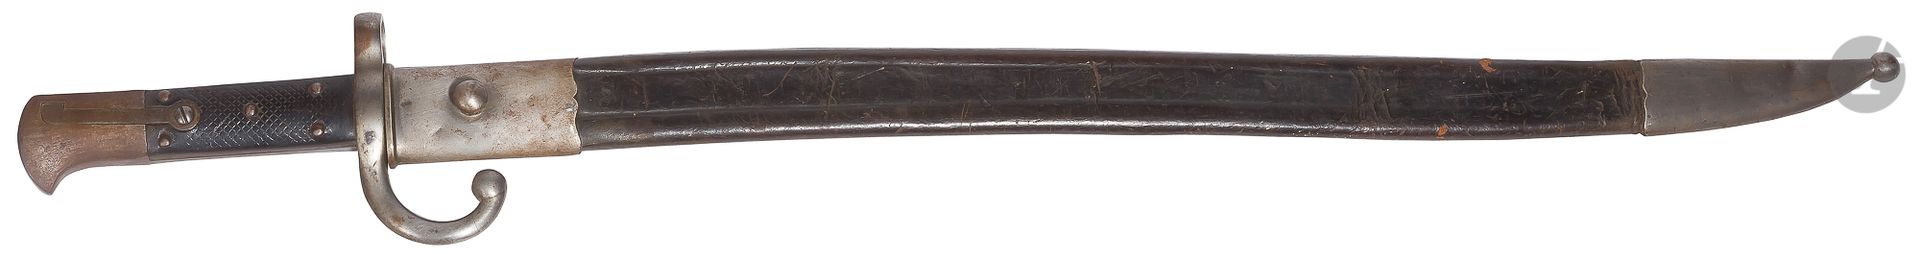 Null Amerikanisches türkisches Bajonett Modell 1874 für Peabody Martini Gewehr.
&hellip;